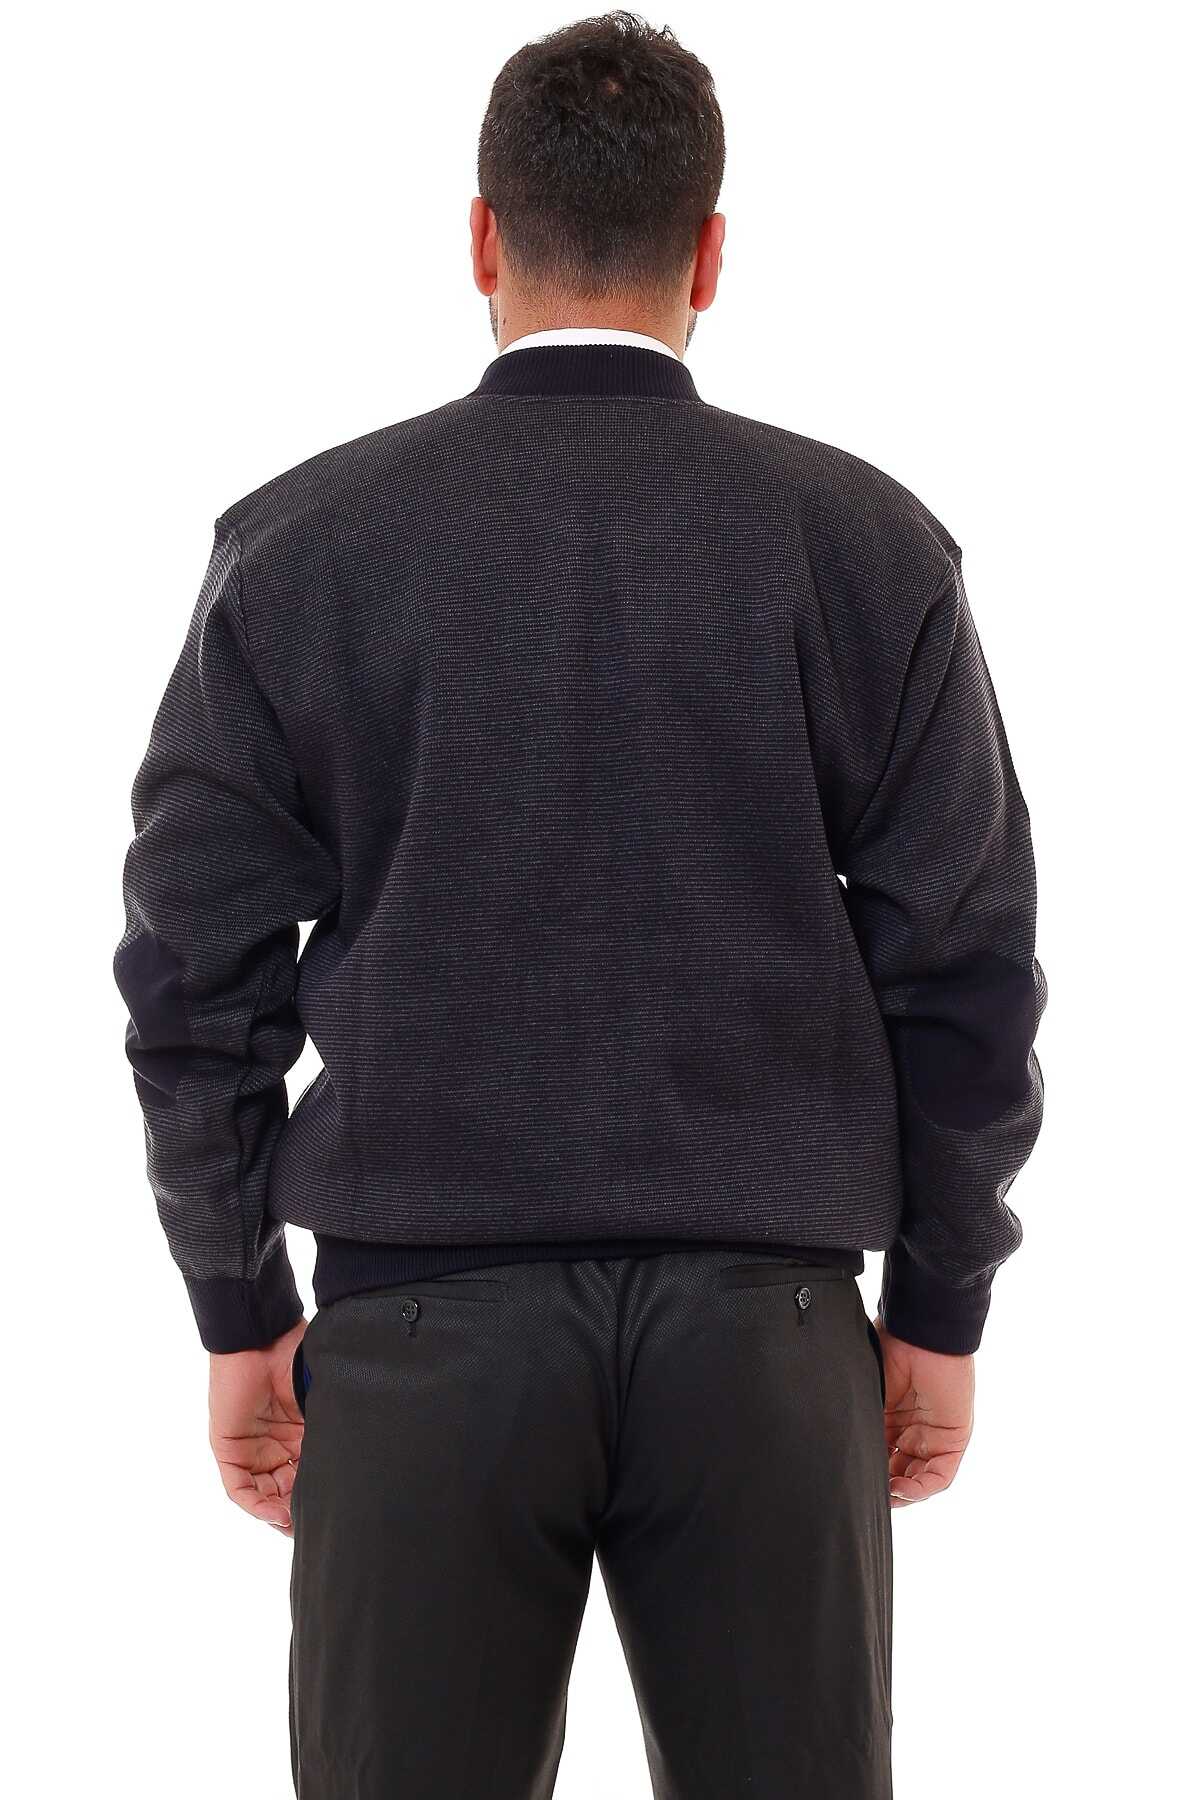 ژاکت سایز بزرگ مردانه جلو زیپ طرح دار سرمه ای برند KARBEY TRİKO